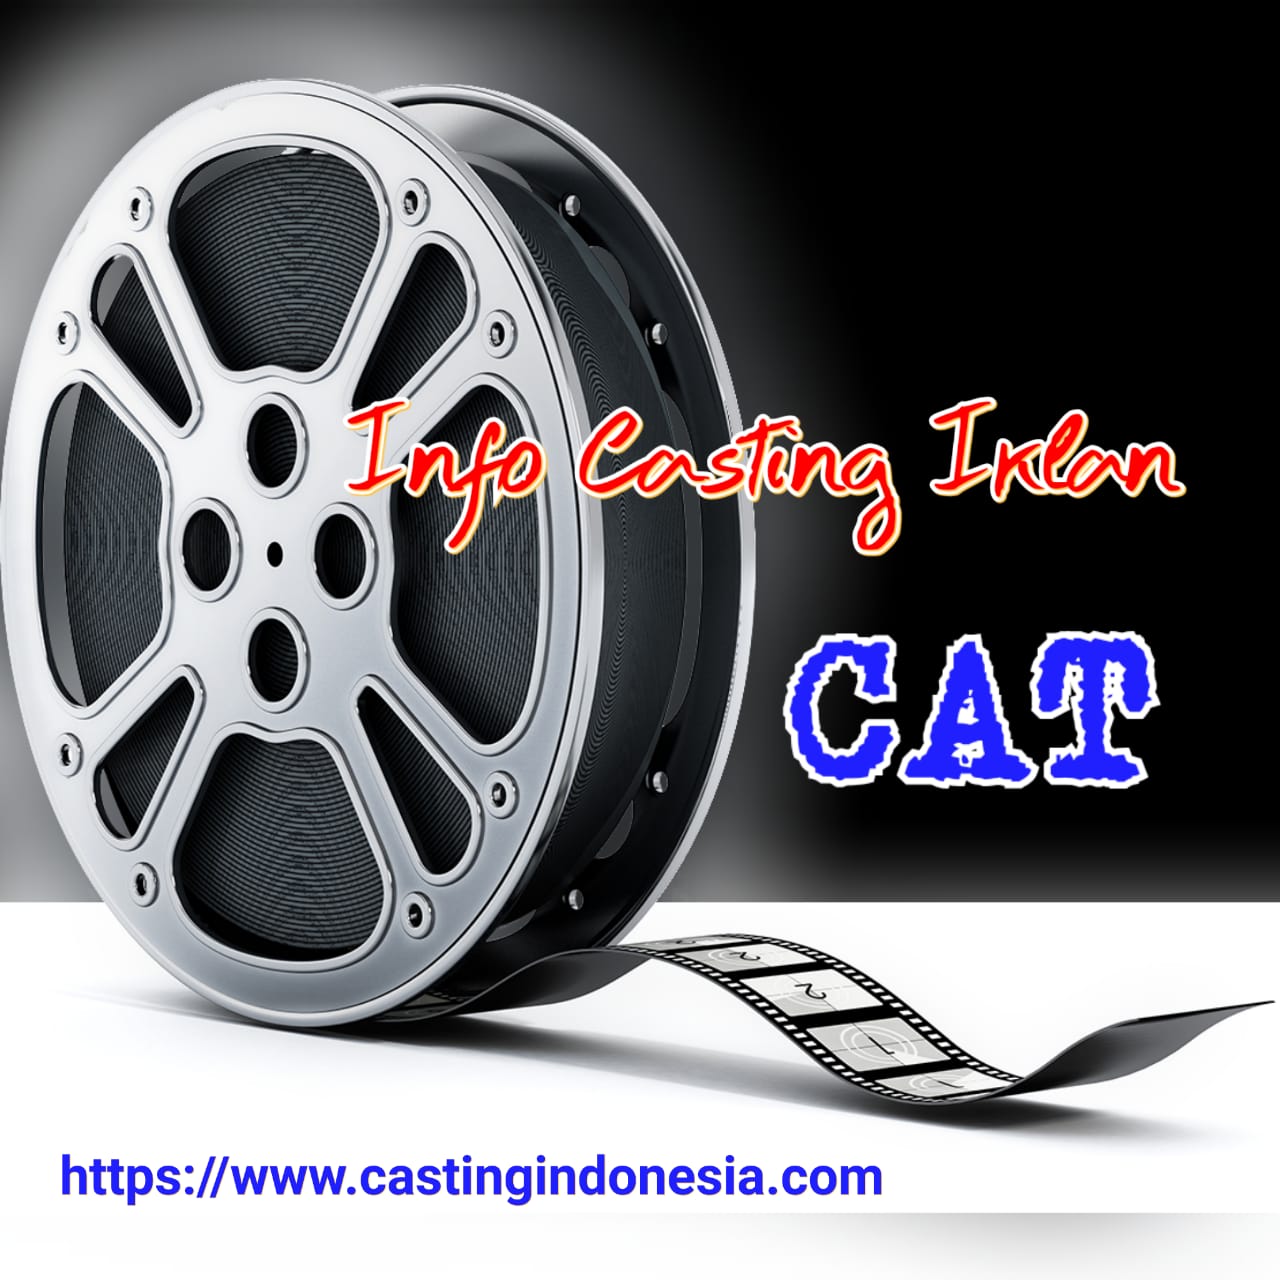 Casting Iklan Cat  Casting Indonesia